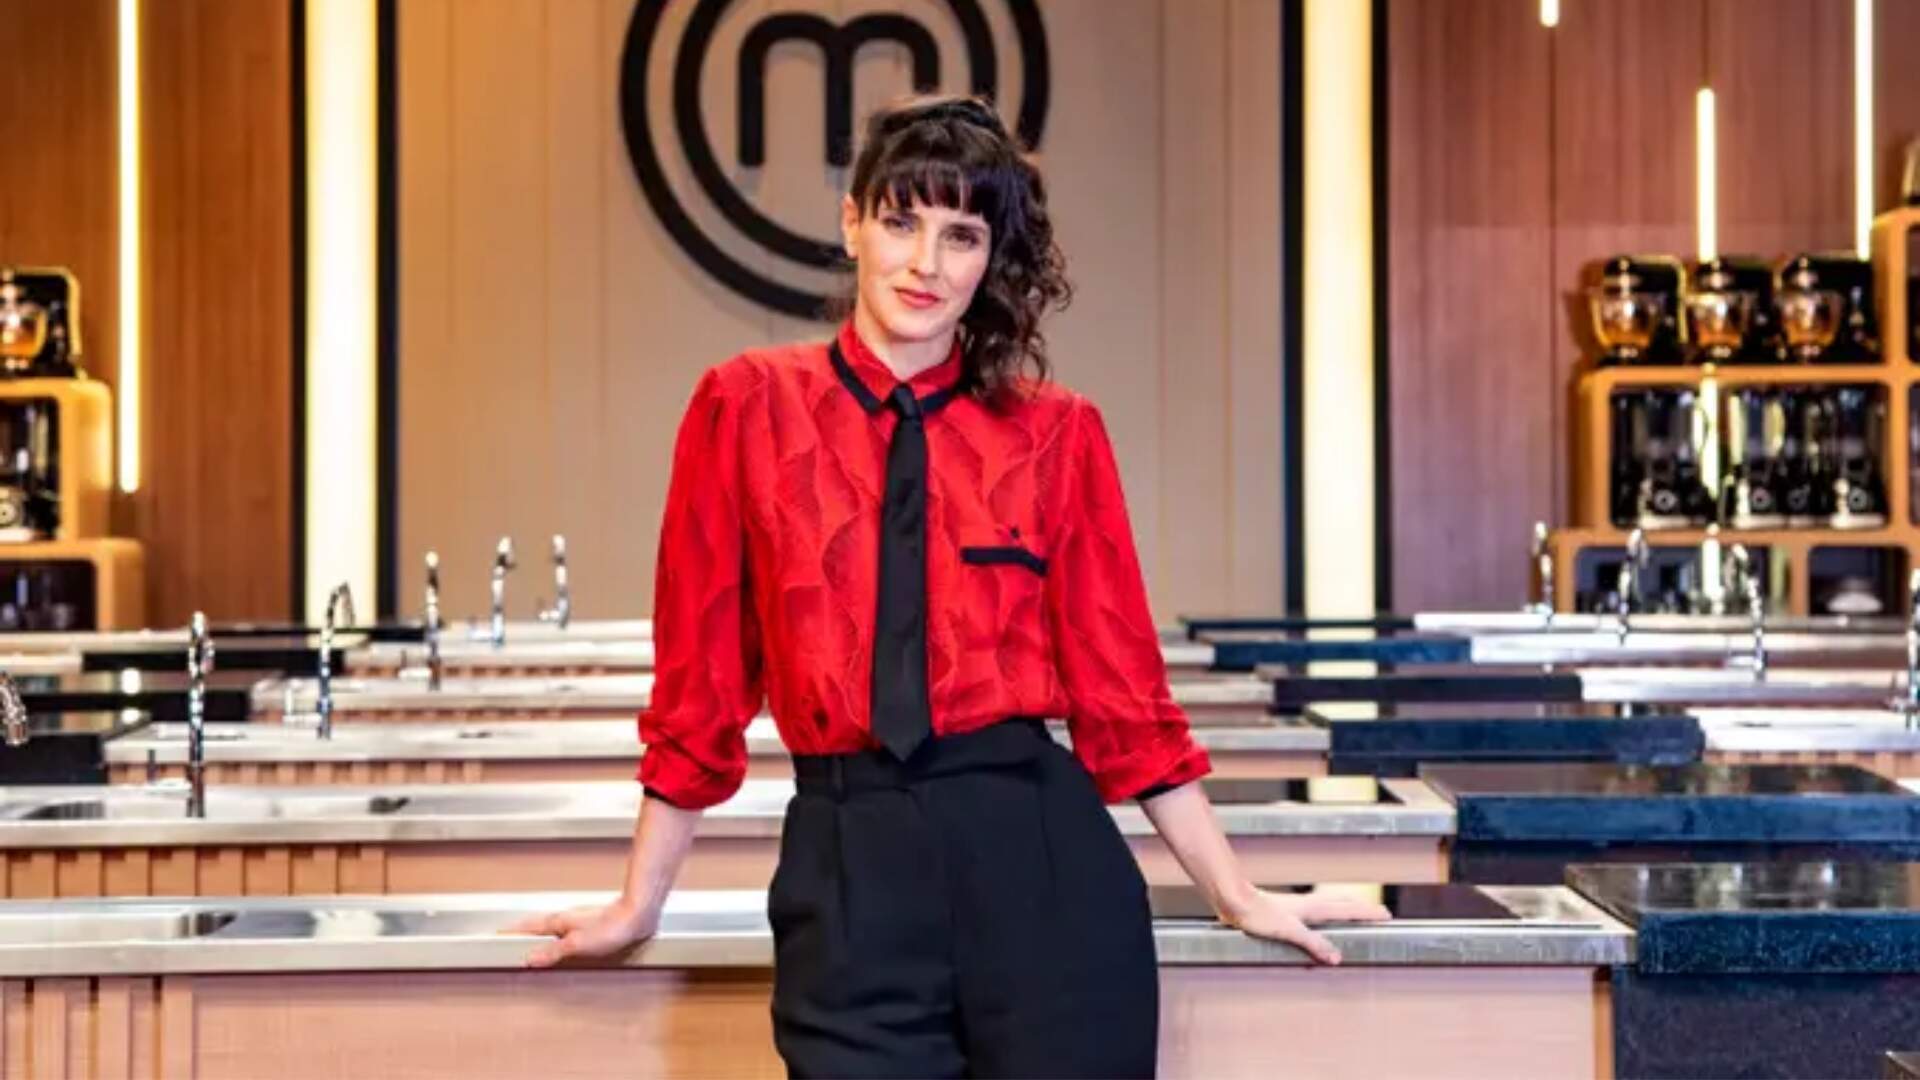 Helena Rizzo fala sobre expectativas para nova temporada de ‘MasterChef’ e explica diferencial: “Não sou personagem” - Metropolitana FM